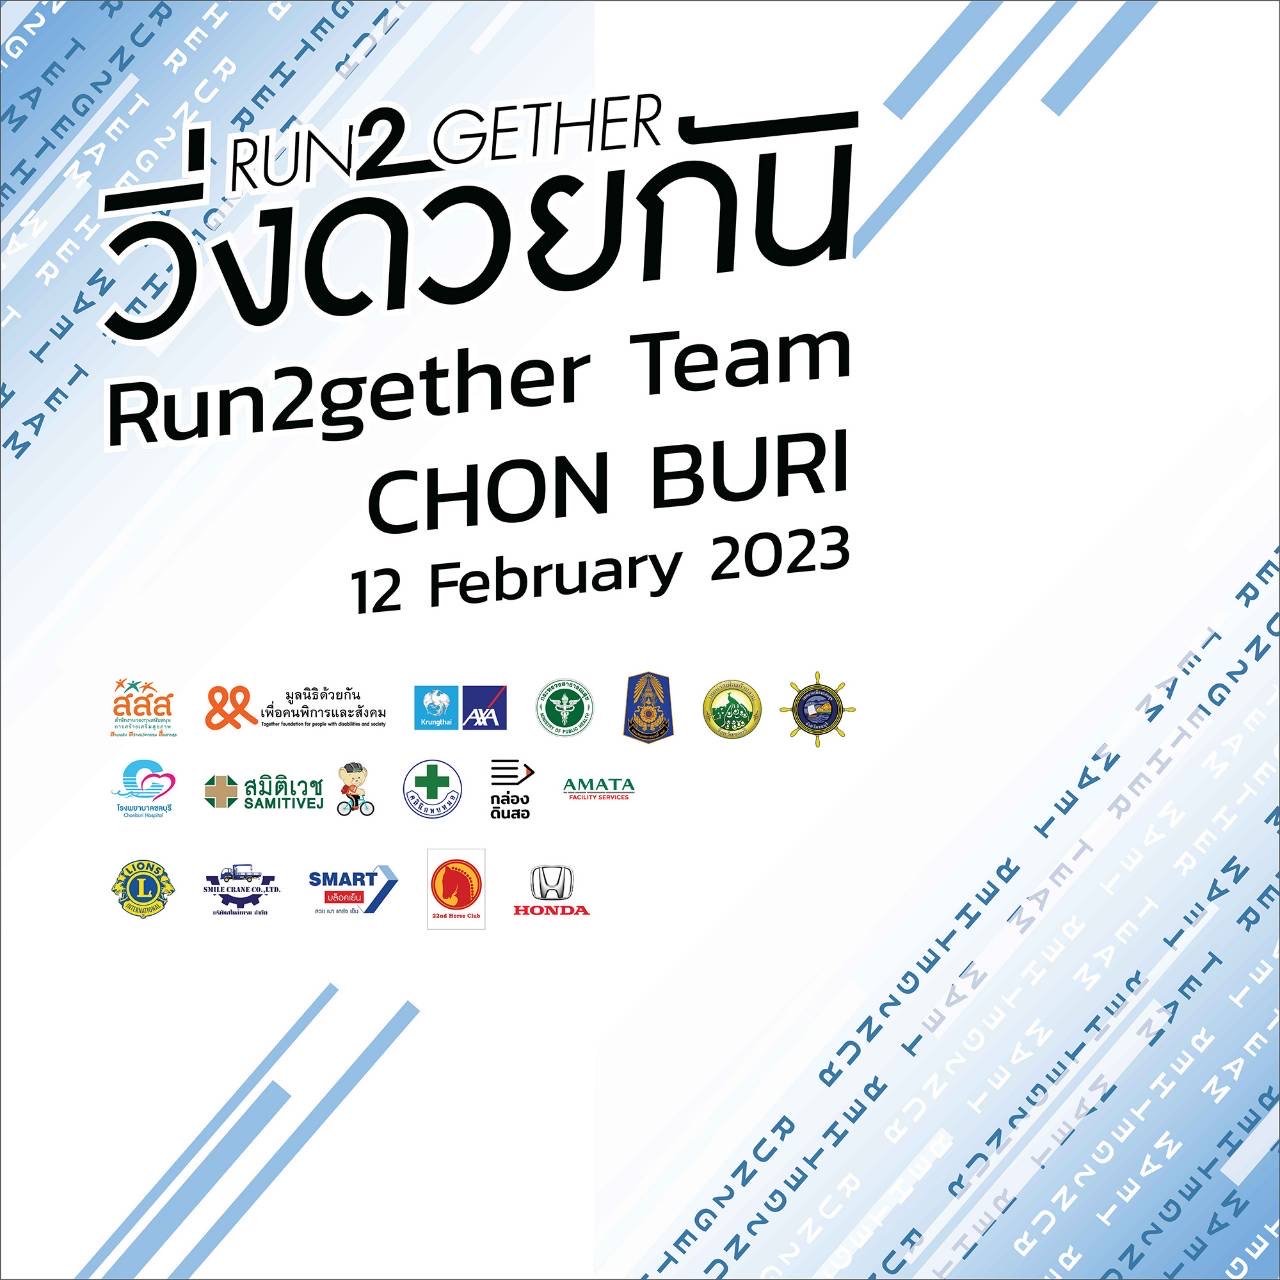 สมาร์ทคอนกรีต (SMART) เข้าร่วมและสนับสนุนงานวิ่งด้วยกัน (Run2gether Team CHON BURI 12 February 2023) 